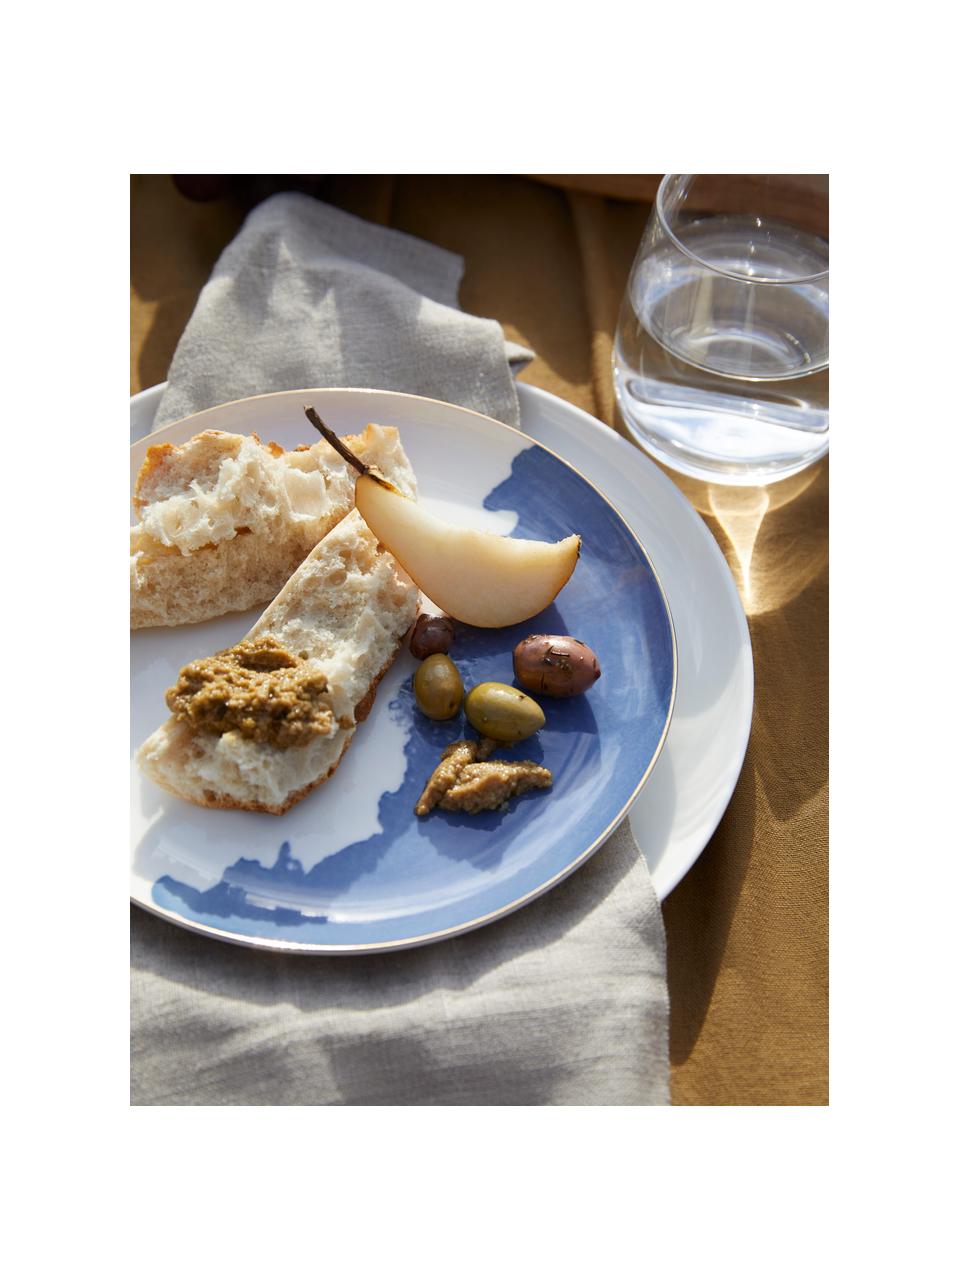 Talerz śniadaniowy z porcelany Rosie, 2 szt., Porcelana, Biały, niebieski, ze złotą krawędzią, Ø 21 x W 2 cm